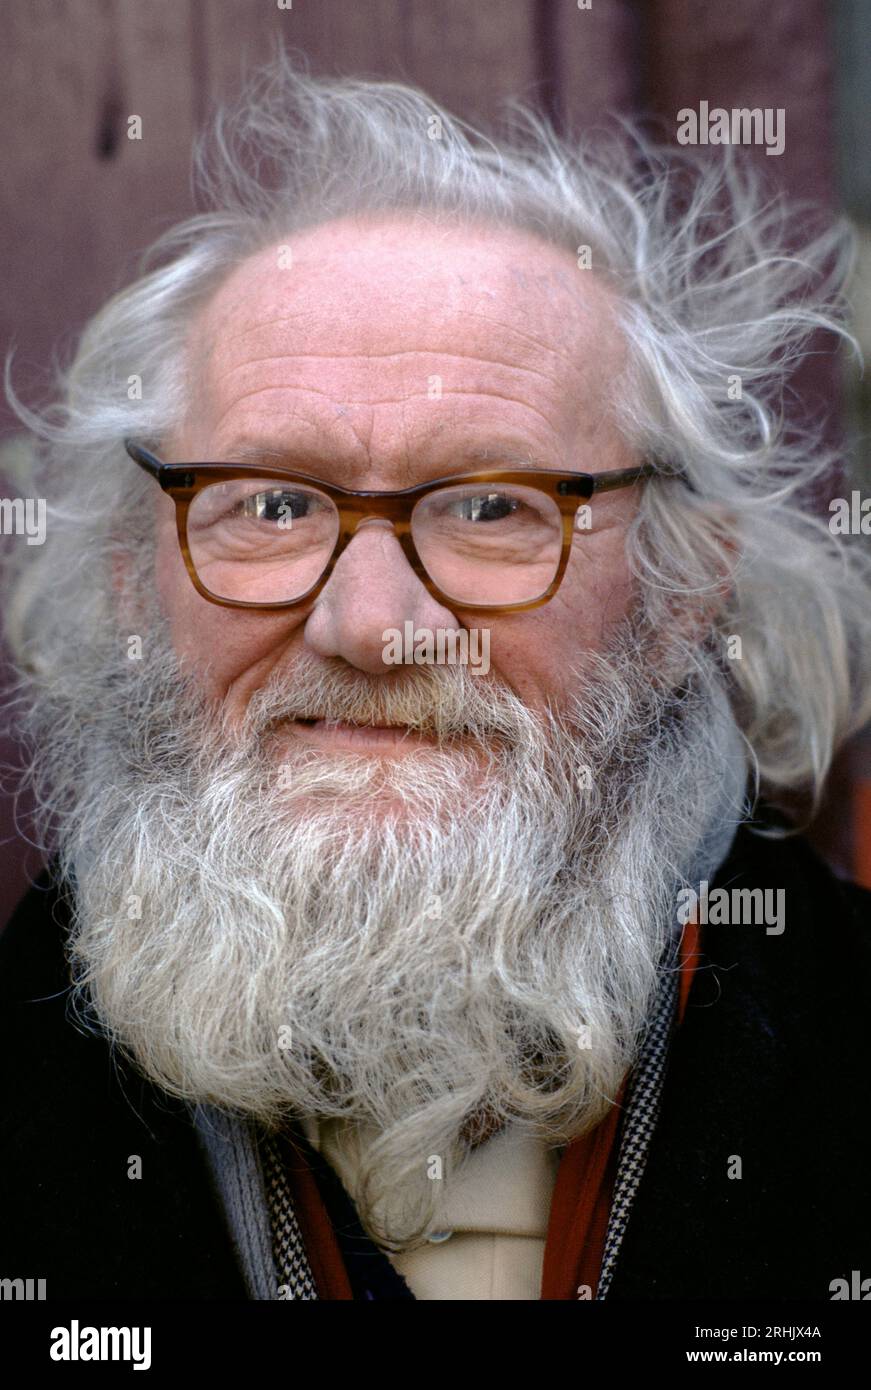 Vecchio senzatetto con una grande e disordinata barba bianca. Londra, Inghilterra circa anni '1995 1990 Regno Unito HOMER SYKES Foto Stock